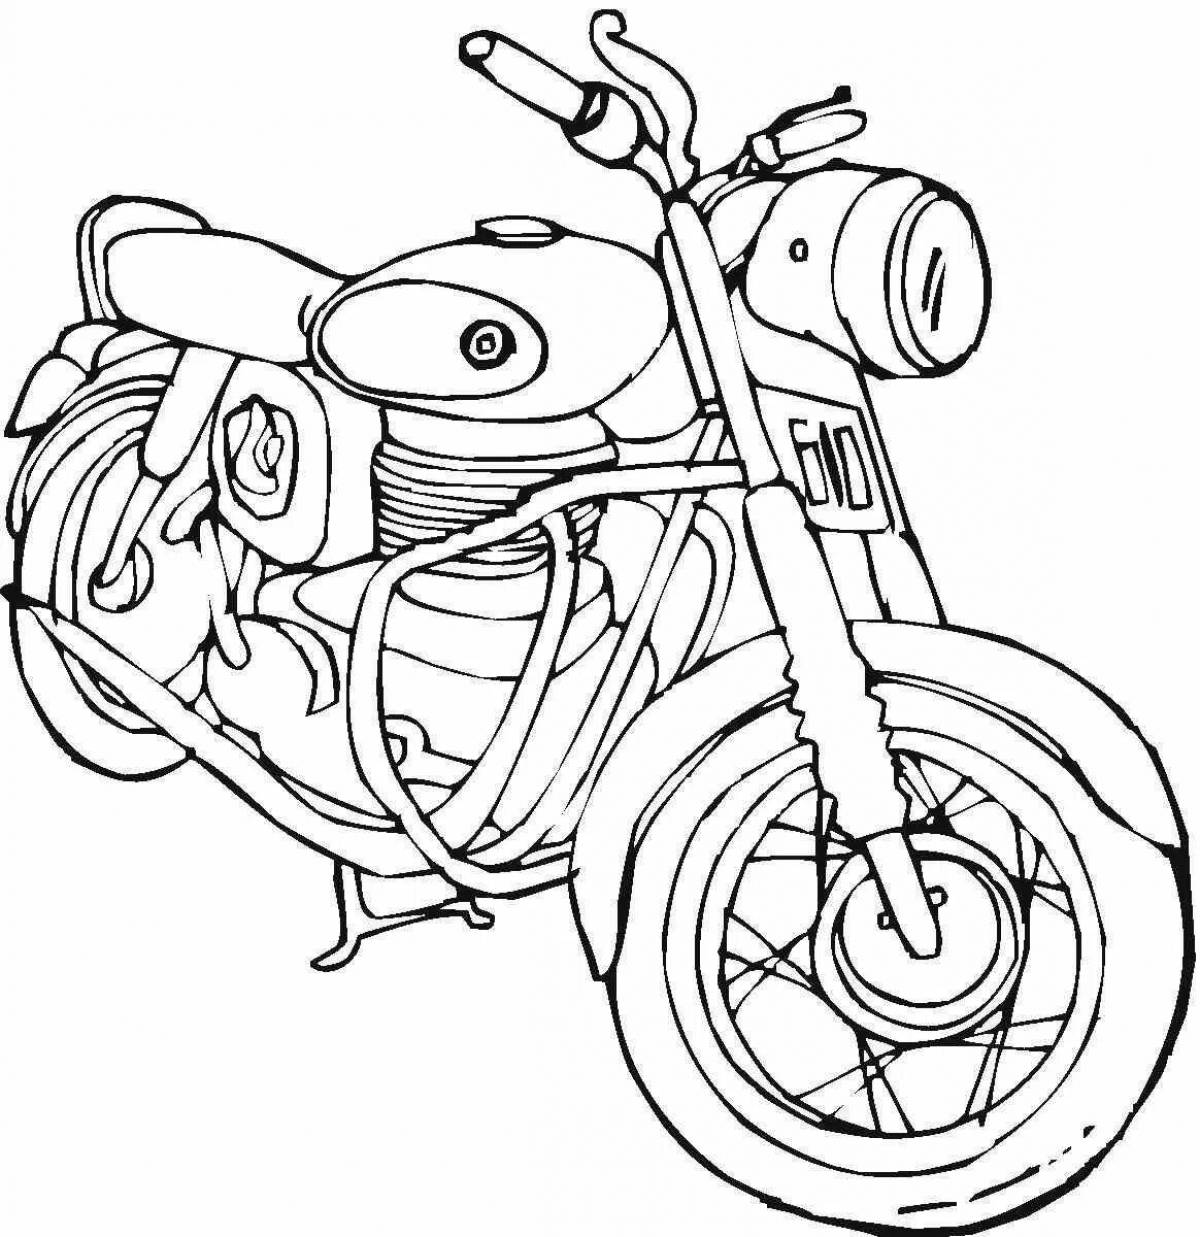 Фото Яркая раскраска мотоцикла для малышей